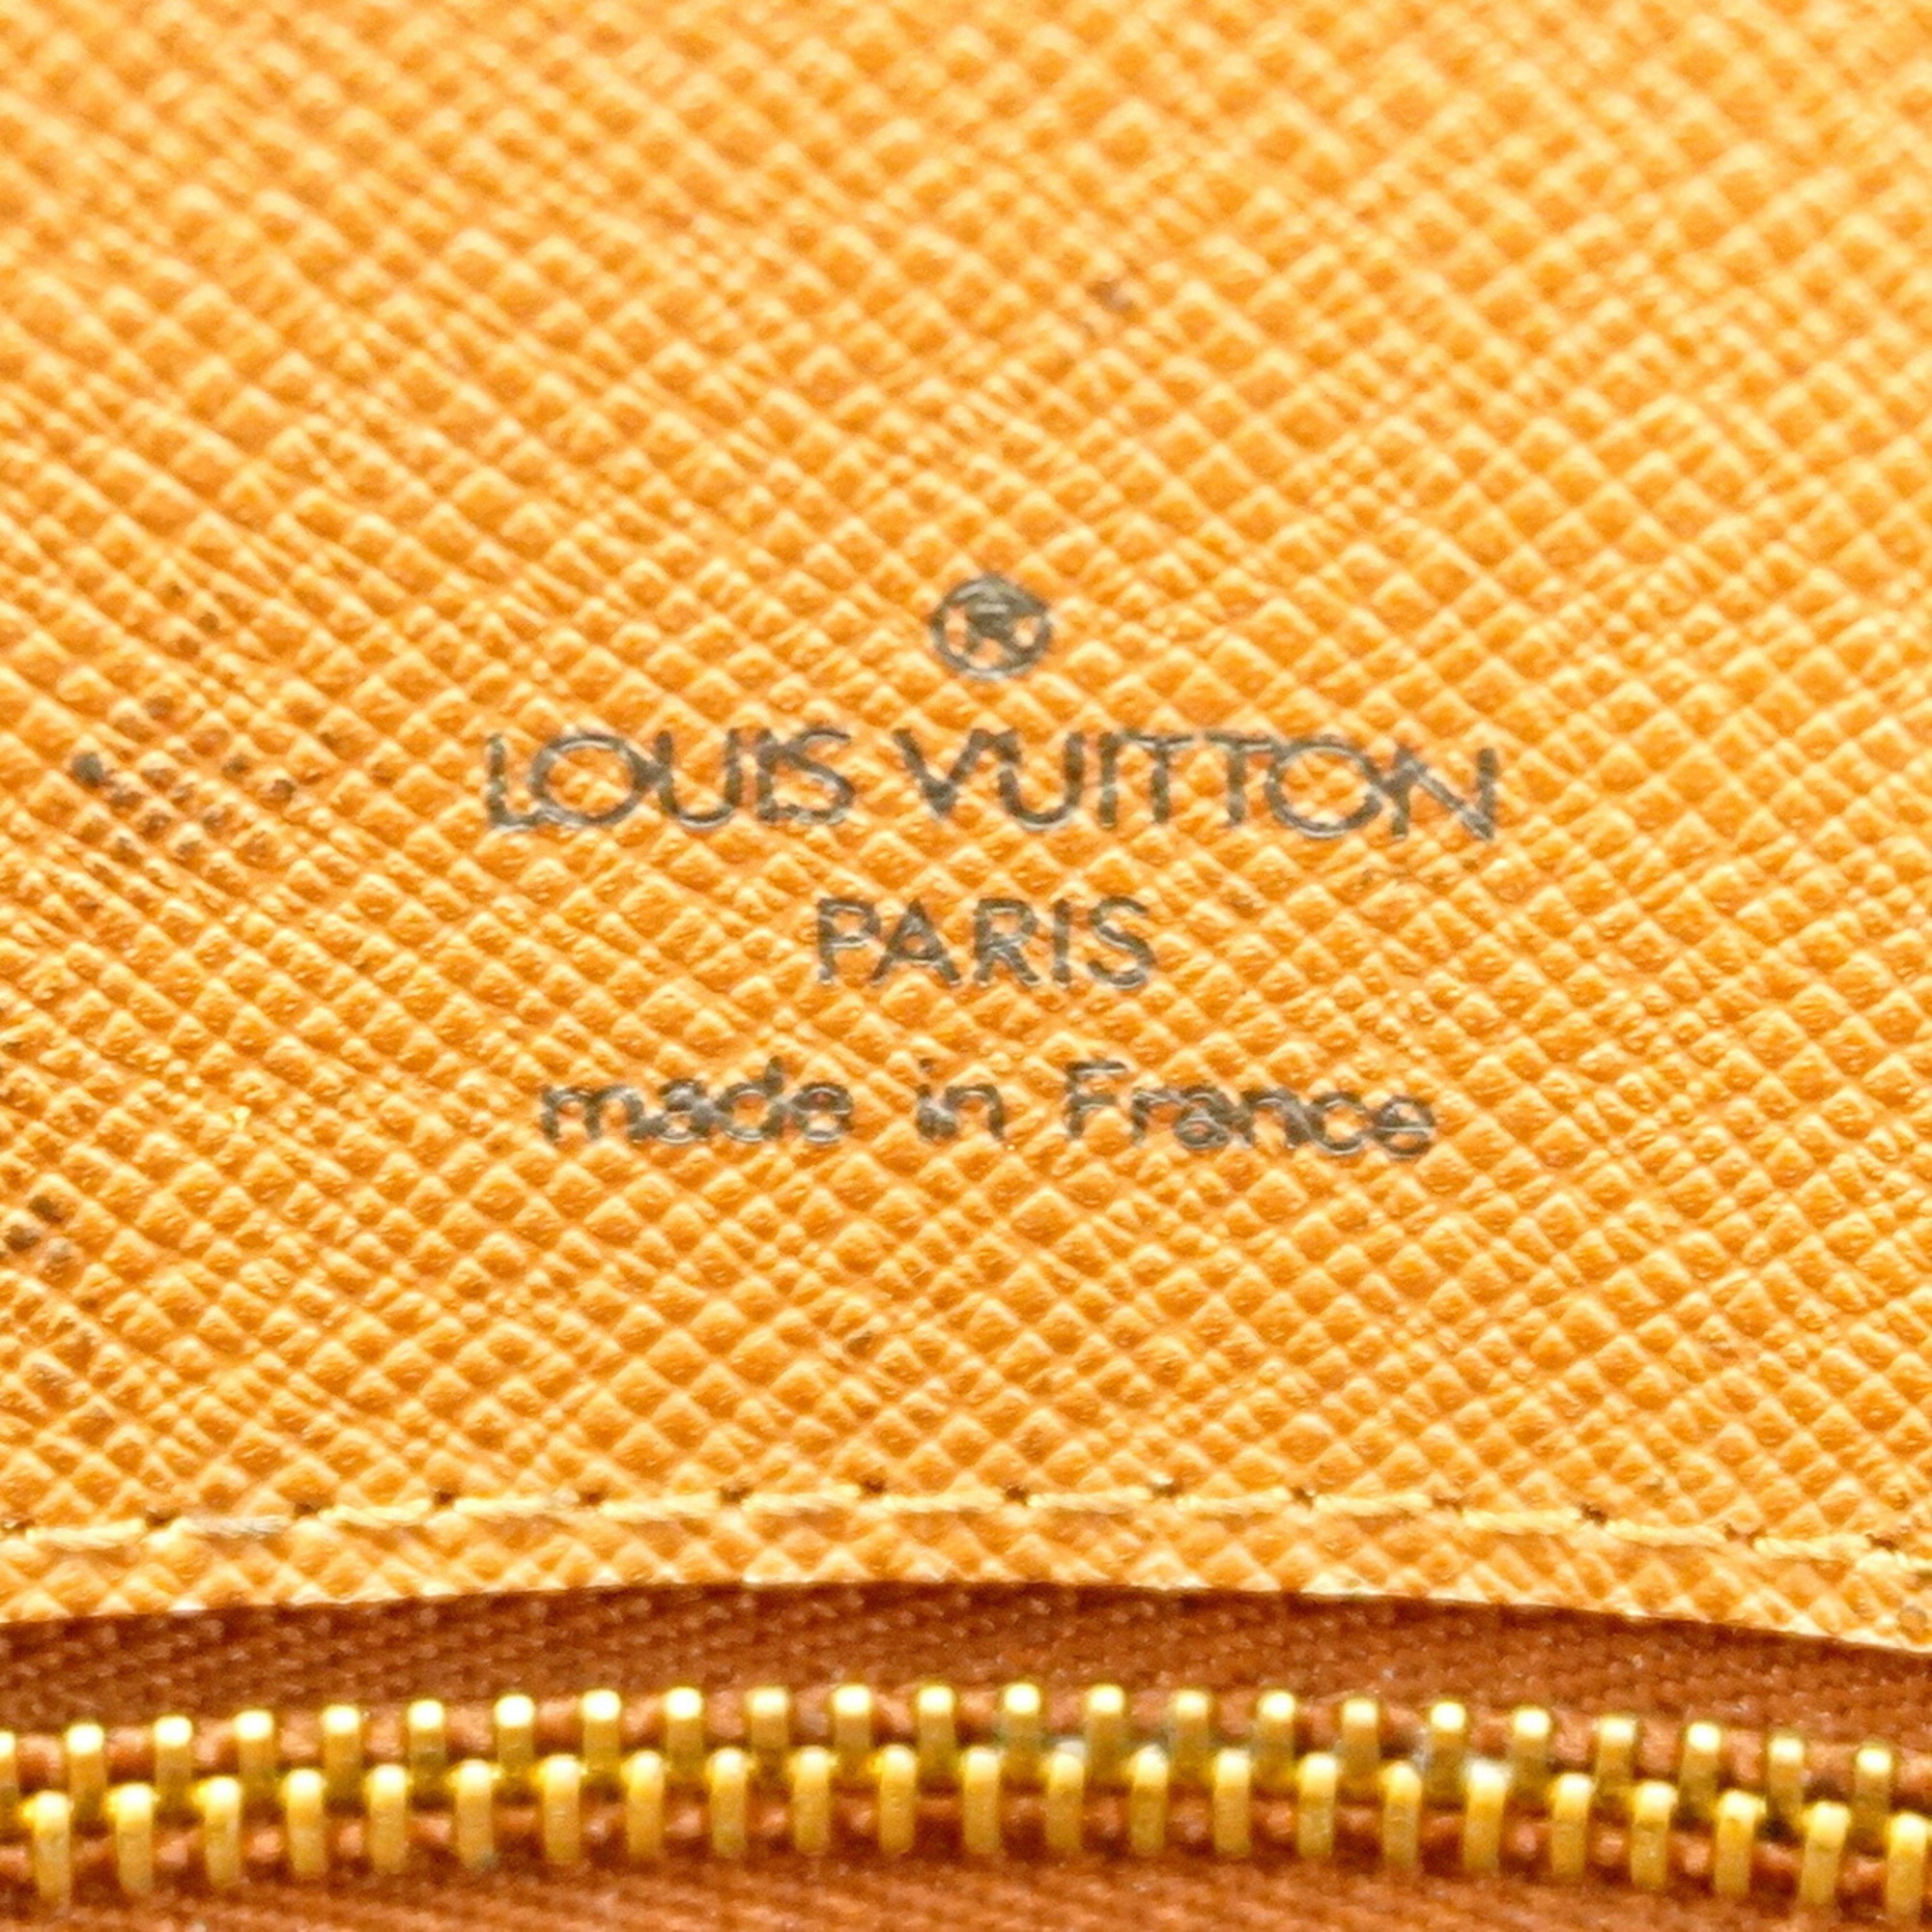 ルイ・ヴィトン(Louis Vuitton) ルイ・ヴィトン ショルダーバッグ モノグラム バビロン M51102 ブラウンレディース